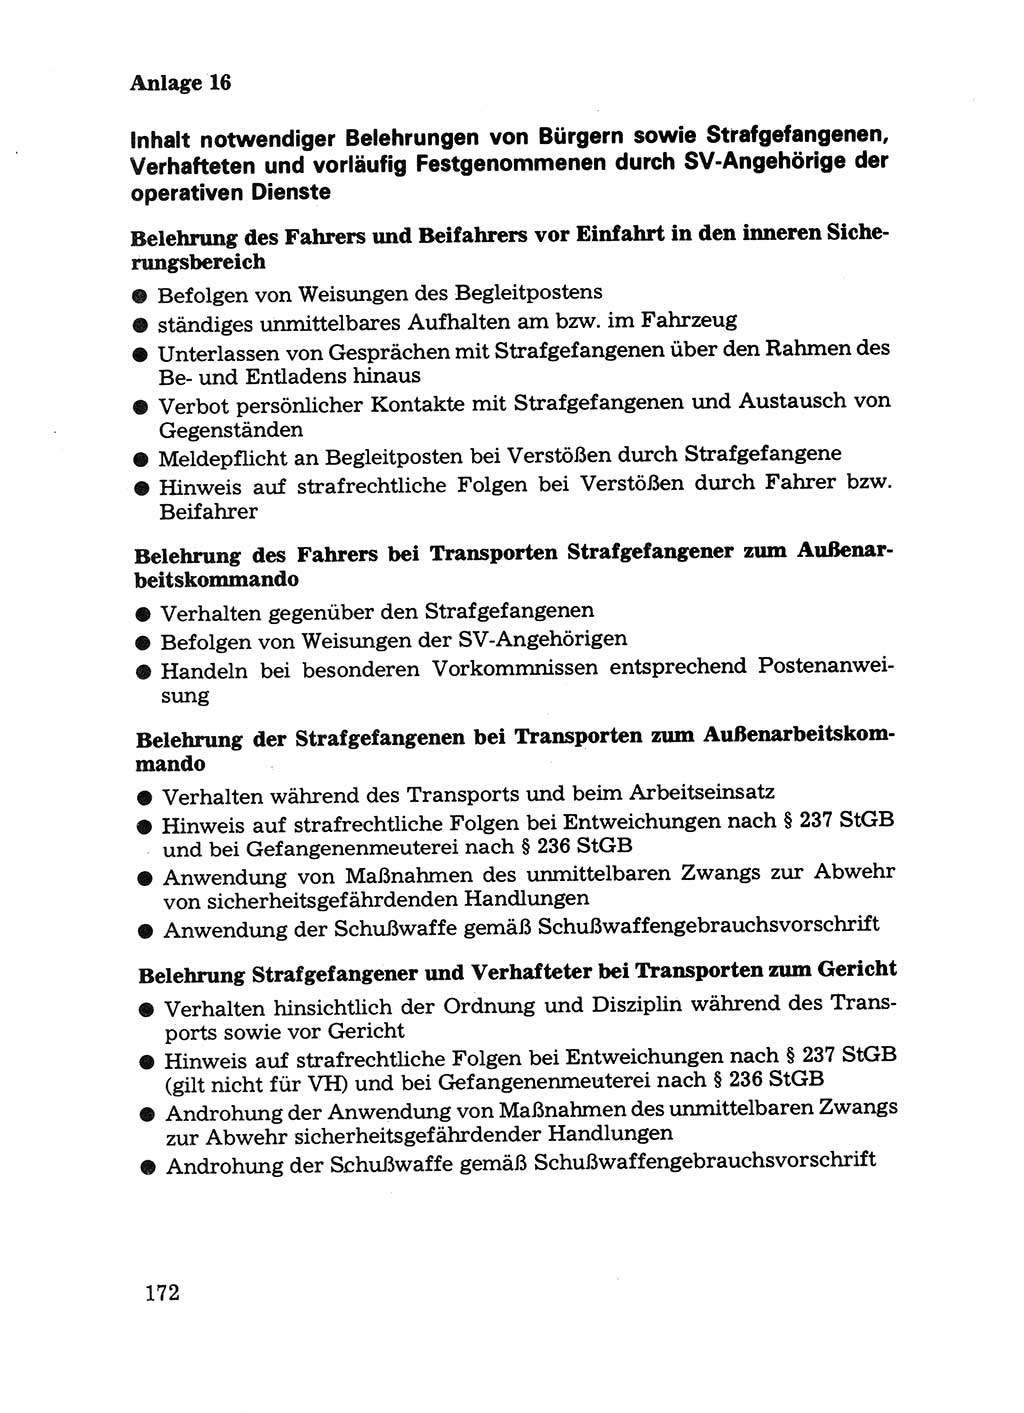 Handbuch für operative Dienste, Abteilung Strafvollzug (SV) [Ministerium des Innern (MdI) Deutsche Demokratische Republik (DDR)] 1981, Seite 172 (Hb. op. D. Abt. SV MdI DDR 1981, S. 172)